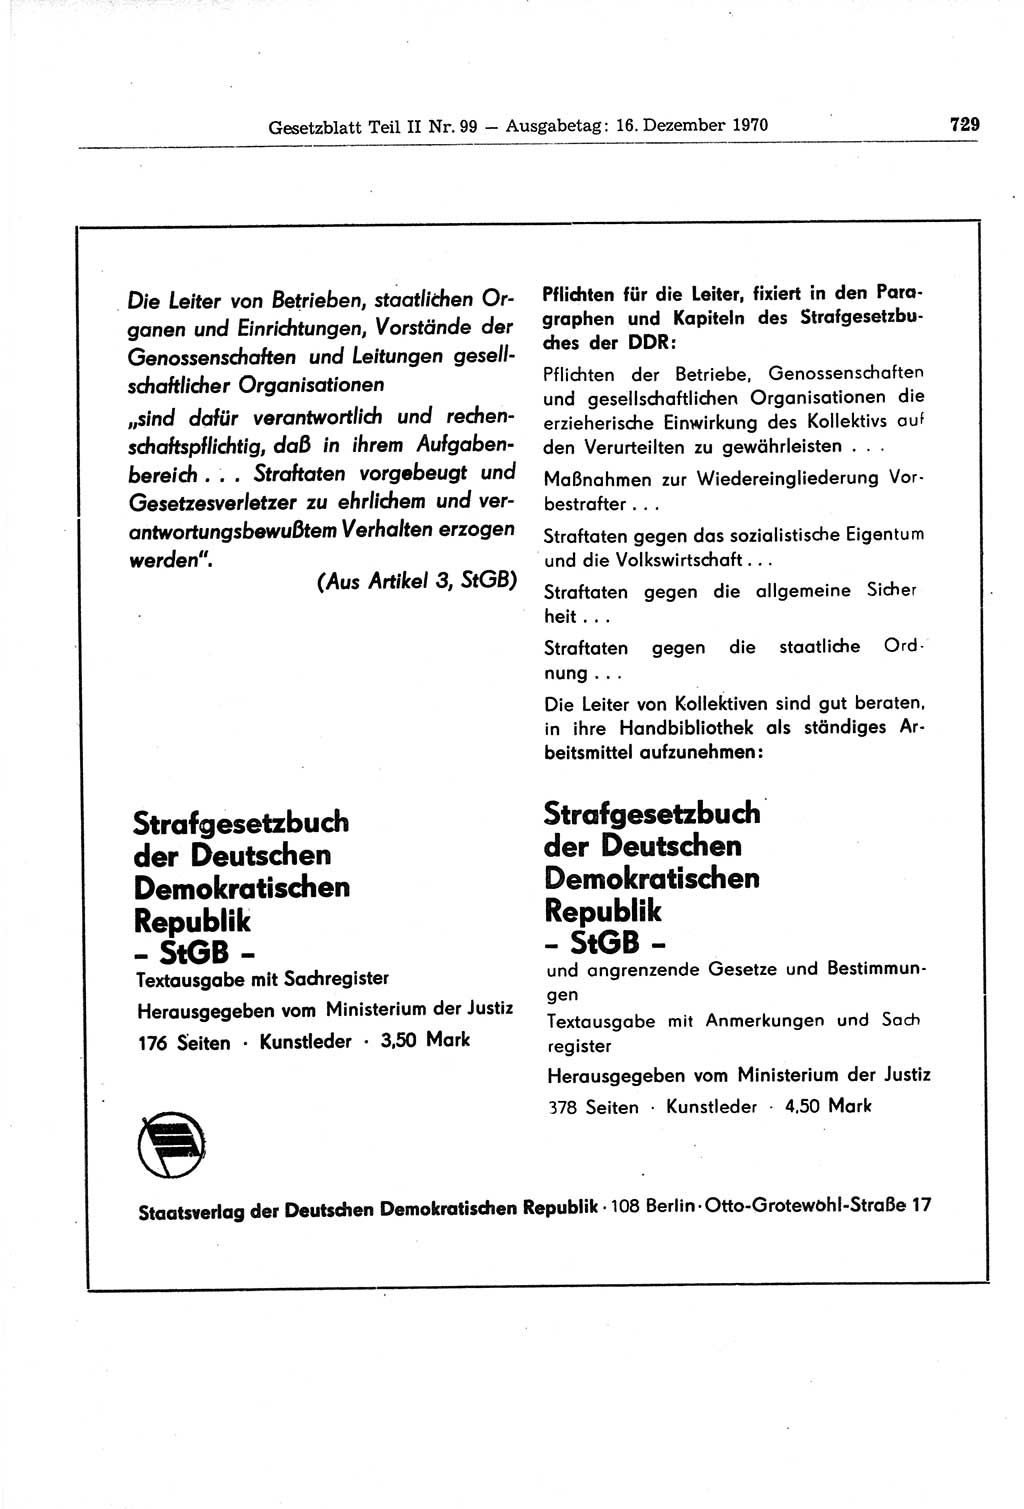 Gesetzblatt (GBl.) der Deutschen Demokratischen Republik (DDR) Teil ⅠⅠ 1970, Seite 729 (GBl. DDR ⅠⅠ 1970, S. 729)